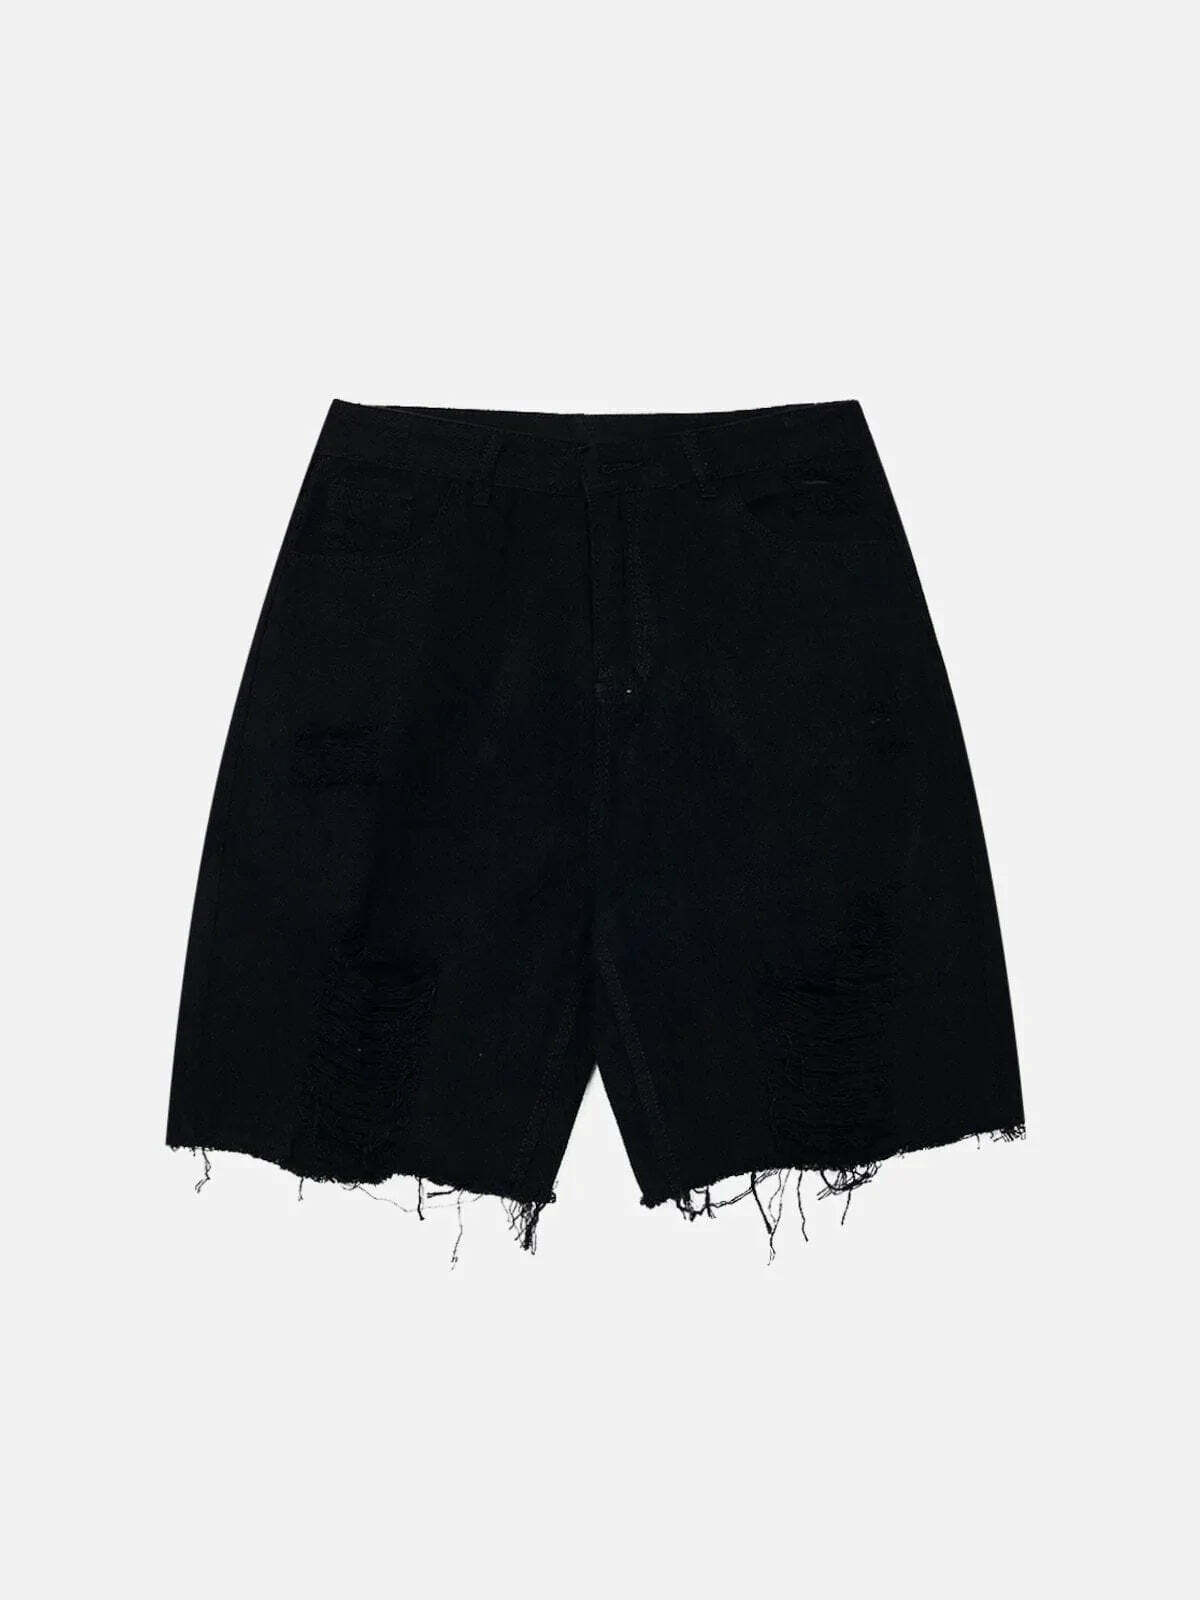 shredded denim shorts edgy urban y2k essential 5104